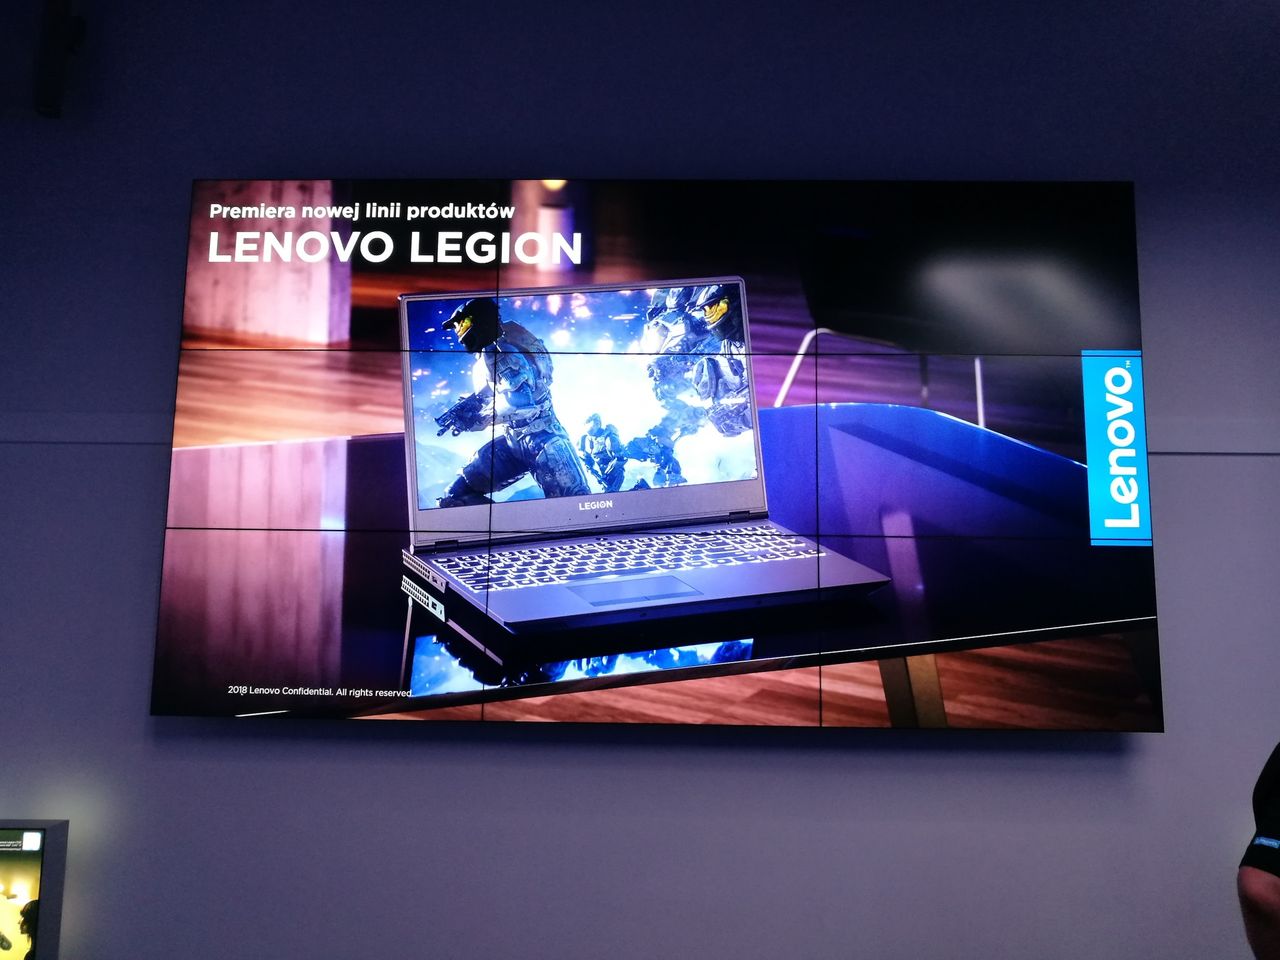 Wielkie zmiany w ofercie Lenovo Legion. Pojawią się smukłe i ładne notebooki dla graczy